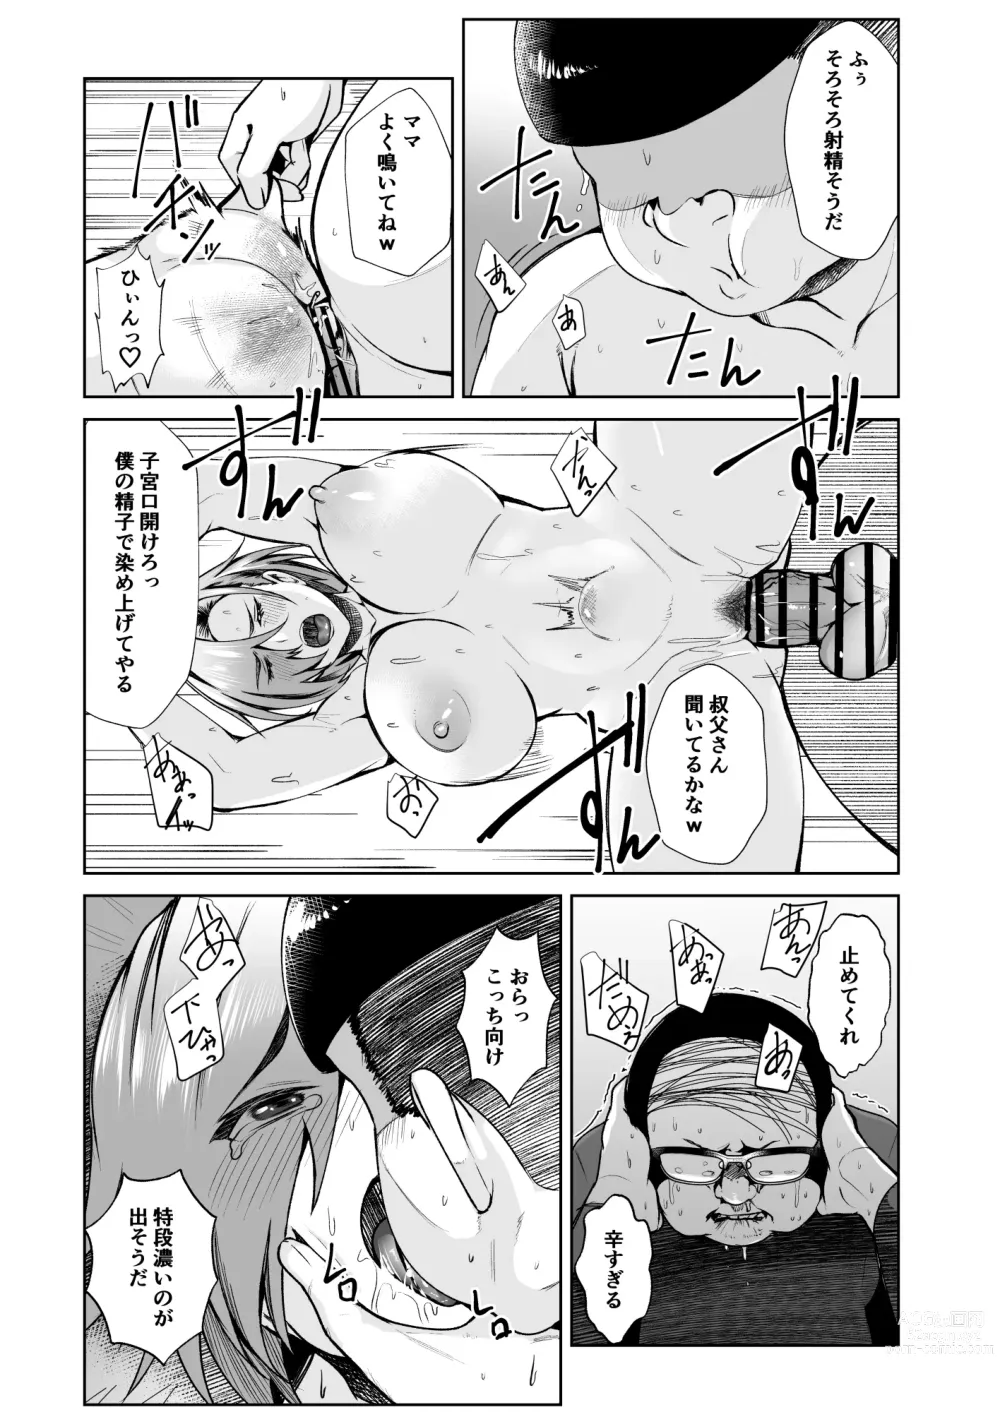 Page 28 of doujinshi Ojisanga shakinwo tsumano karadade hotenshitehoshiito iwaretanode kaidakushita hanashi